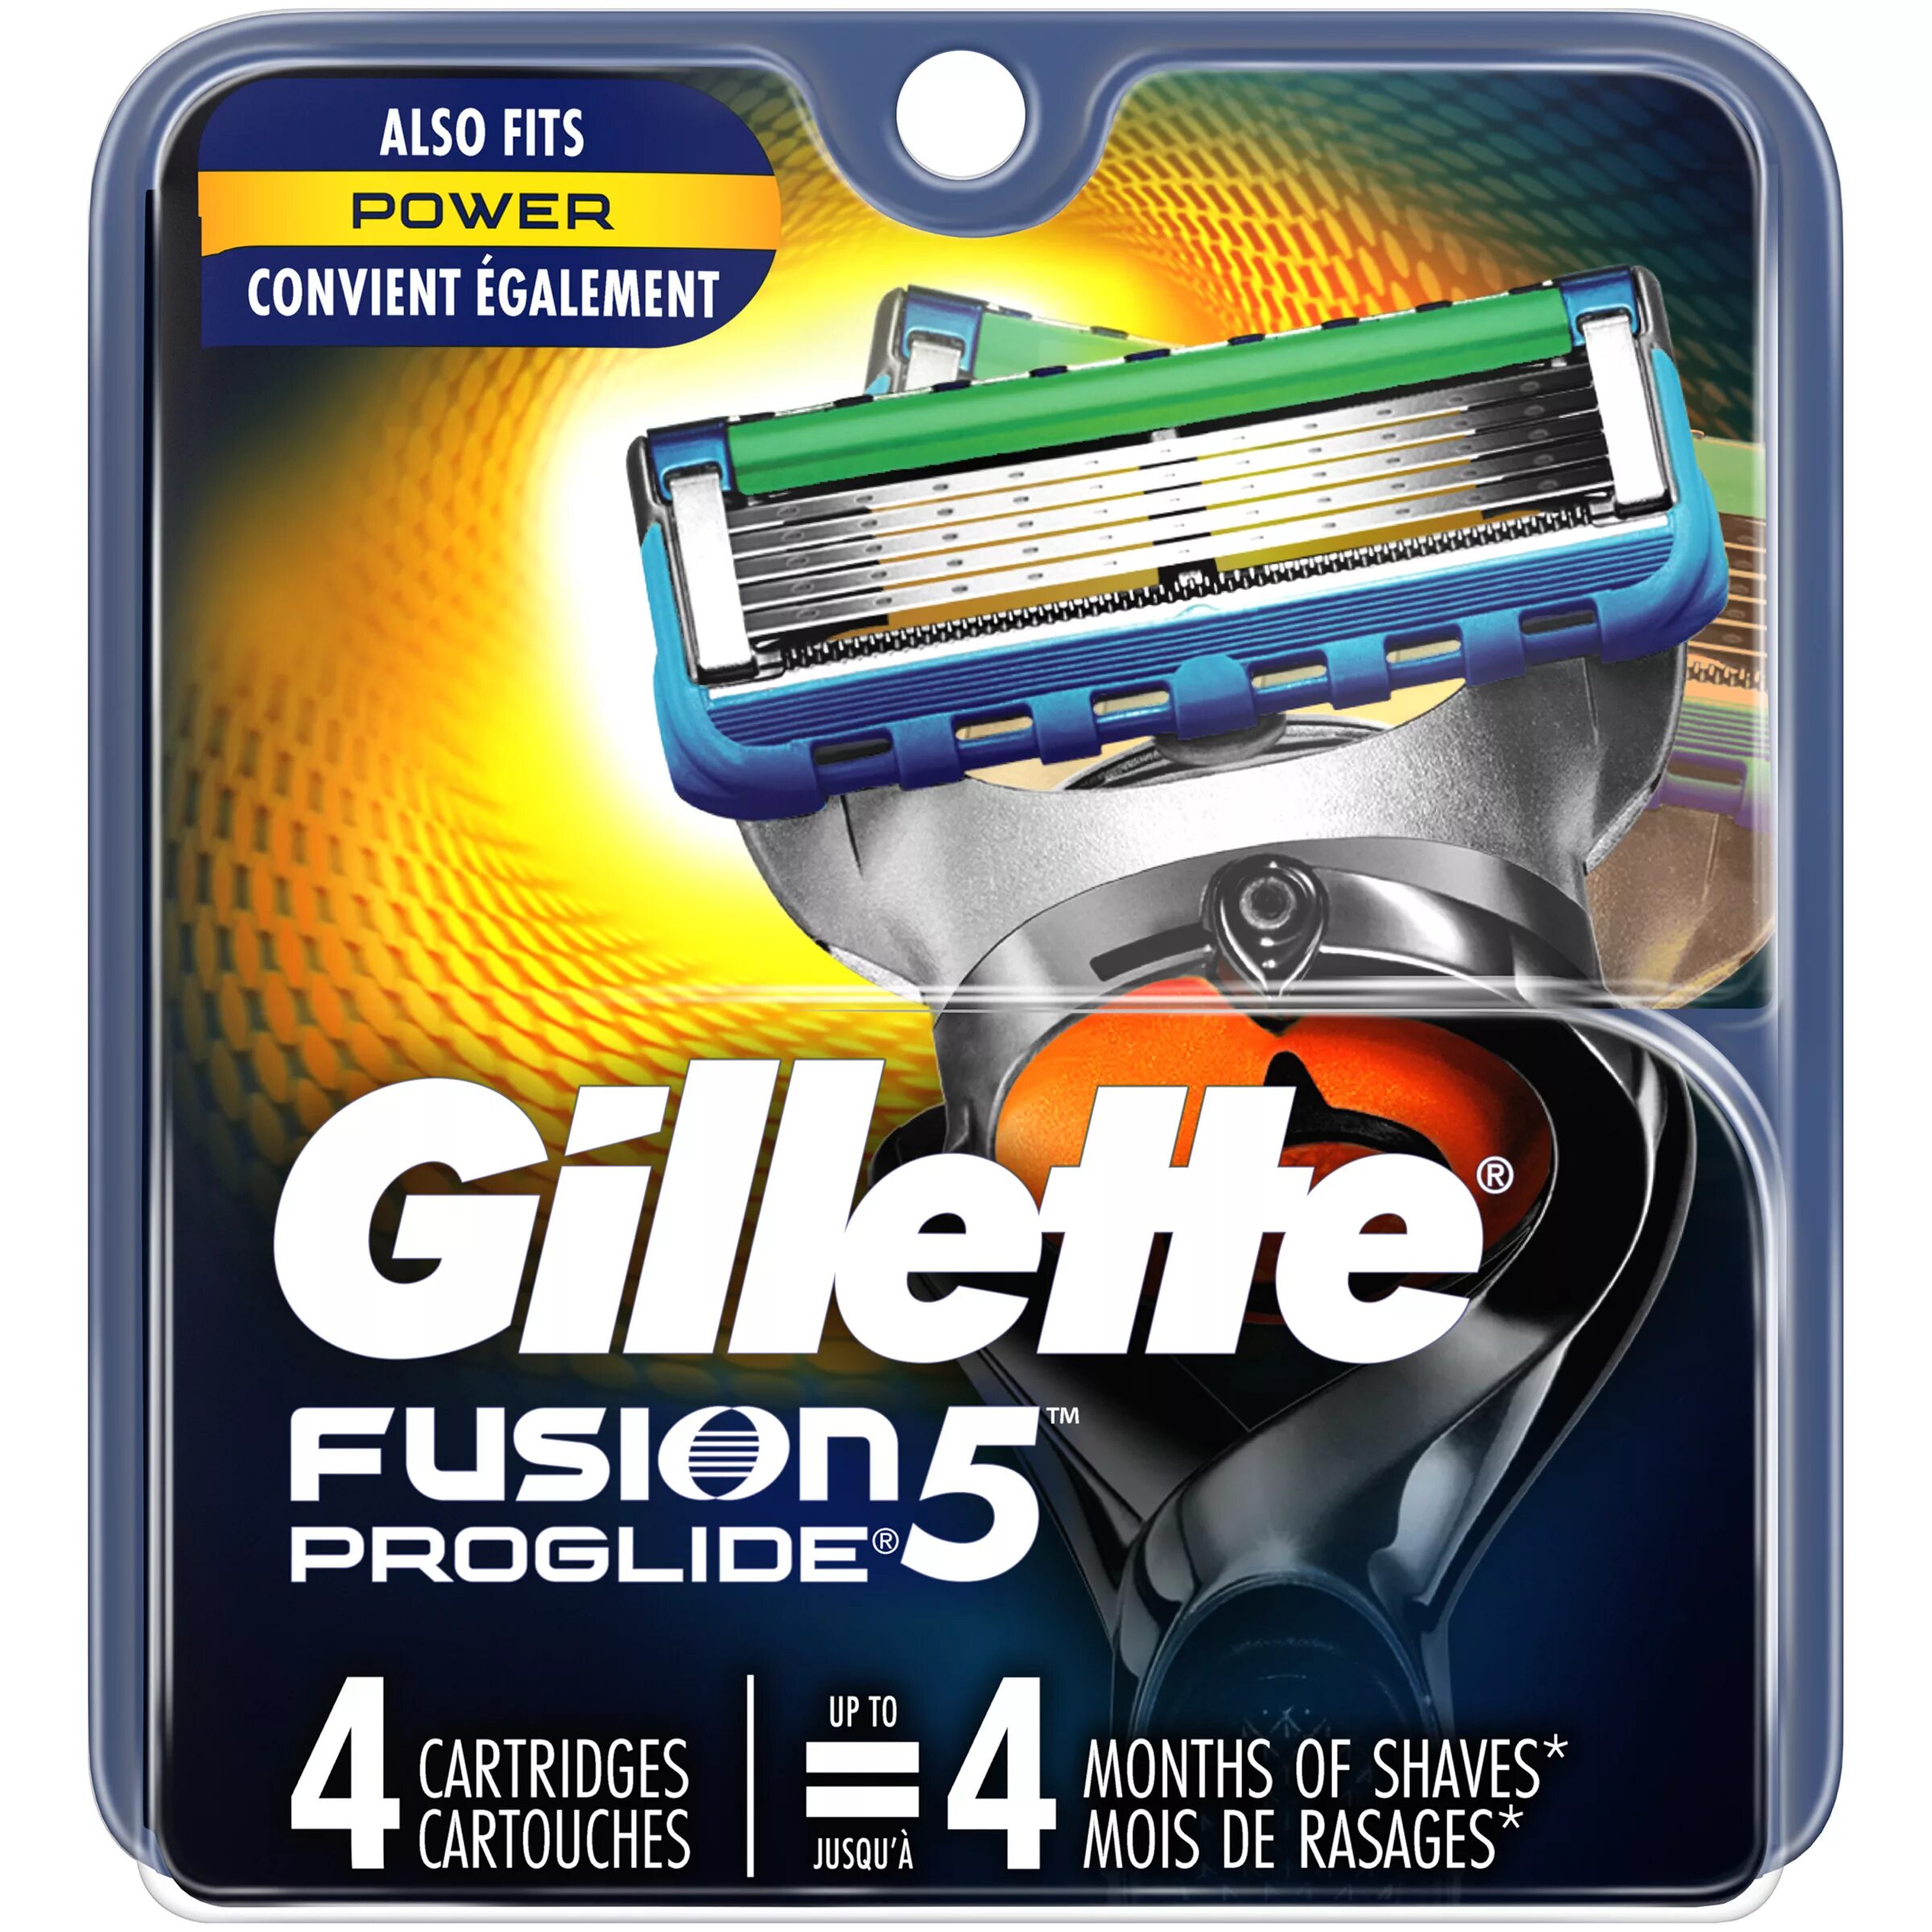 Кассеты для бритья 5 лезвий. Fusion PROGLIDE 5 кассеты. Жиллет Фьюжн 5 Проглайд кассеты.